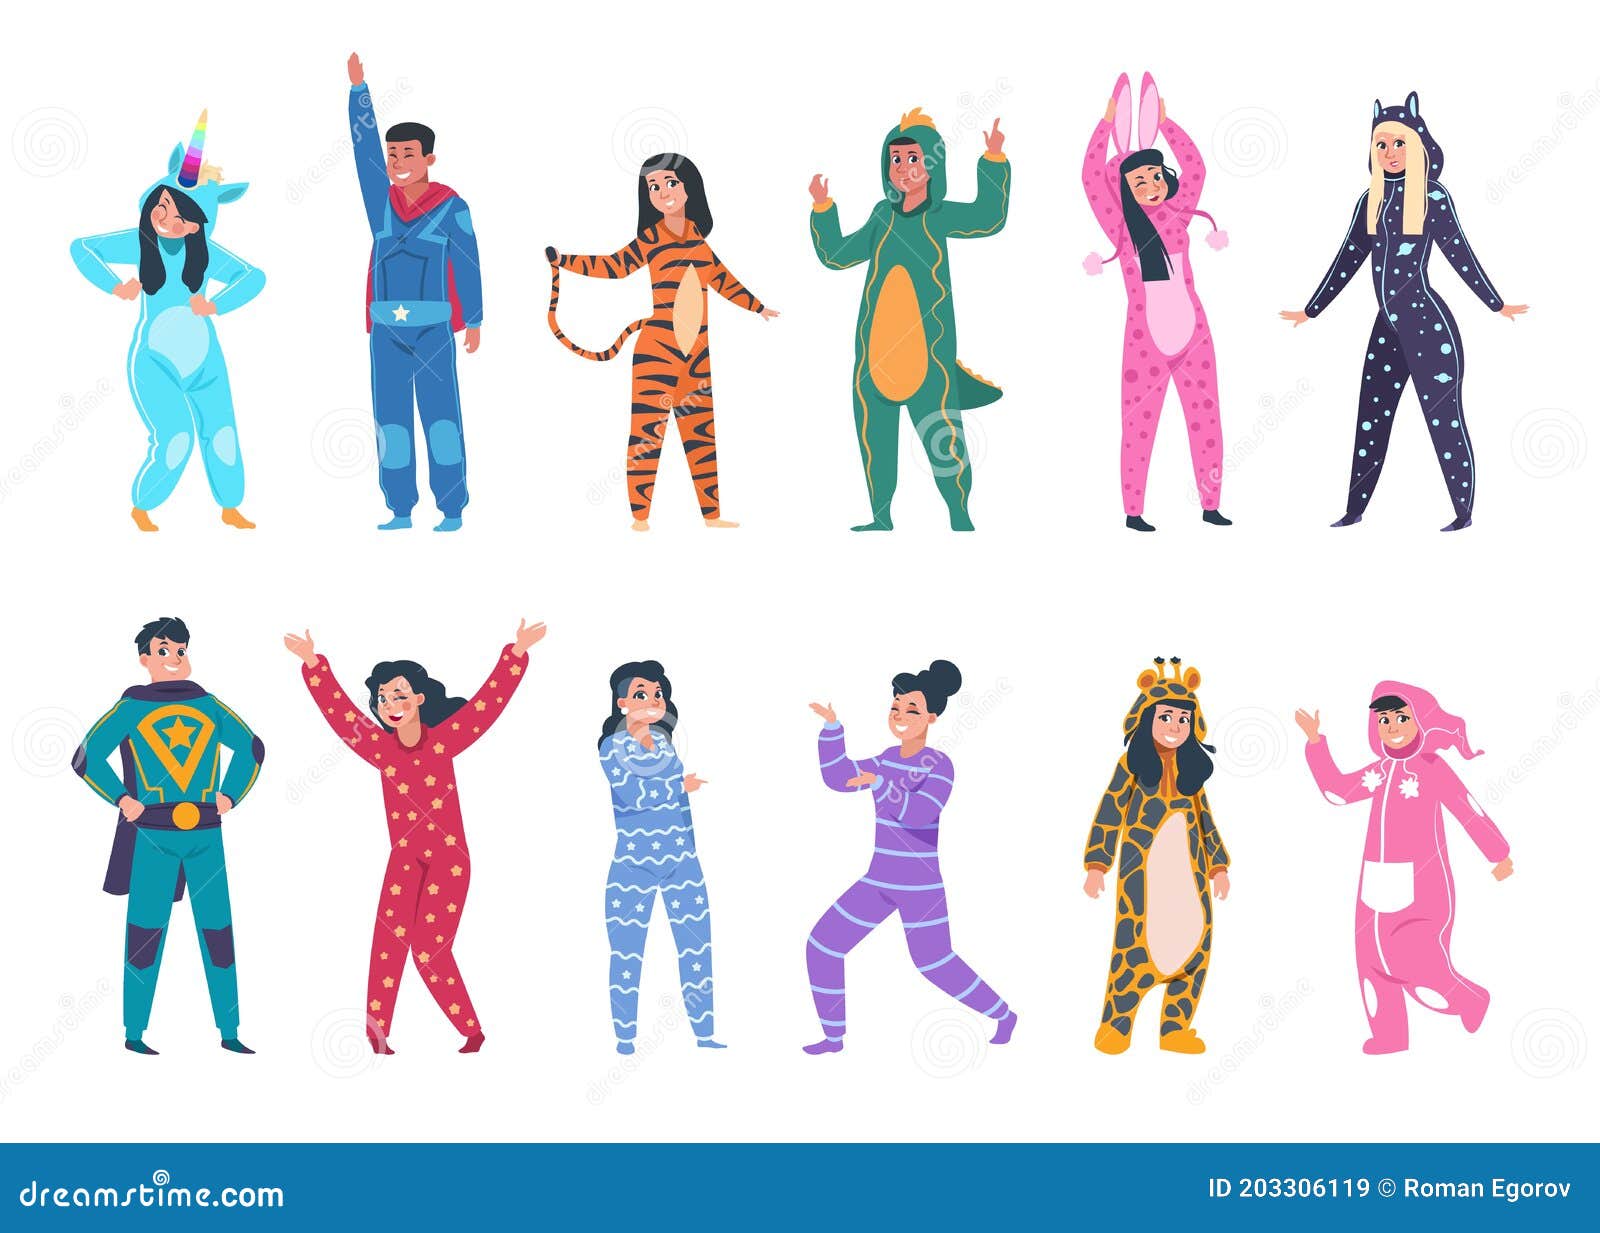 Ilustración De Pijamas De Animales Para Niños Niños Y Niñas Sonrientes En Monos Pelea De